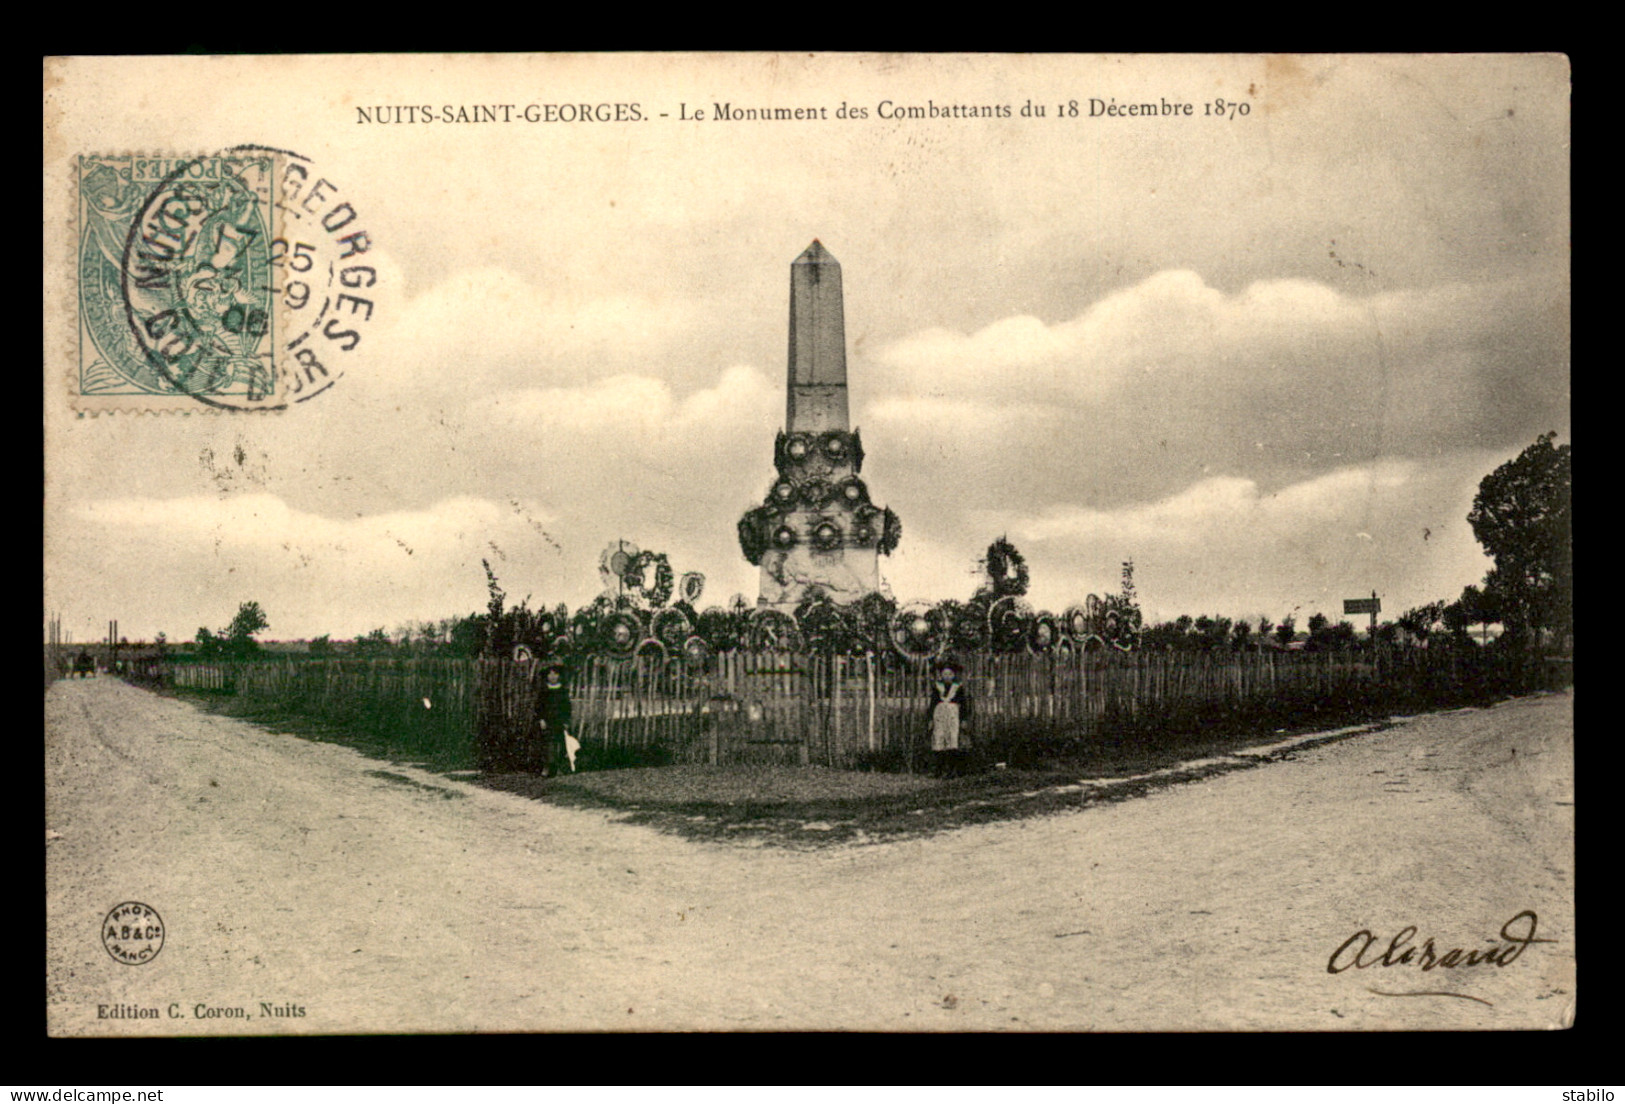 GUERRE DE 1870 - NUITS-ST-GEORGES (COTE-D'OR) - MONUMENT DES COMBATTANTS DU 18 DECEMBRE 1870 - Nuits Saint Georges